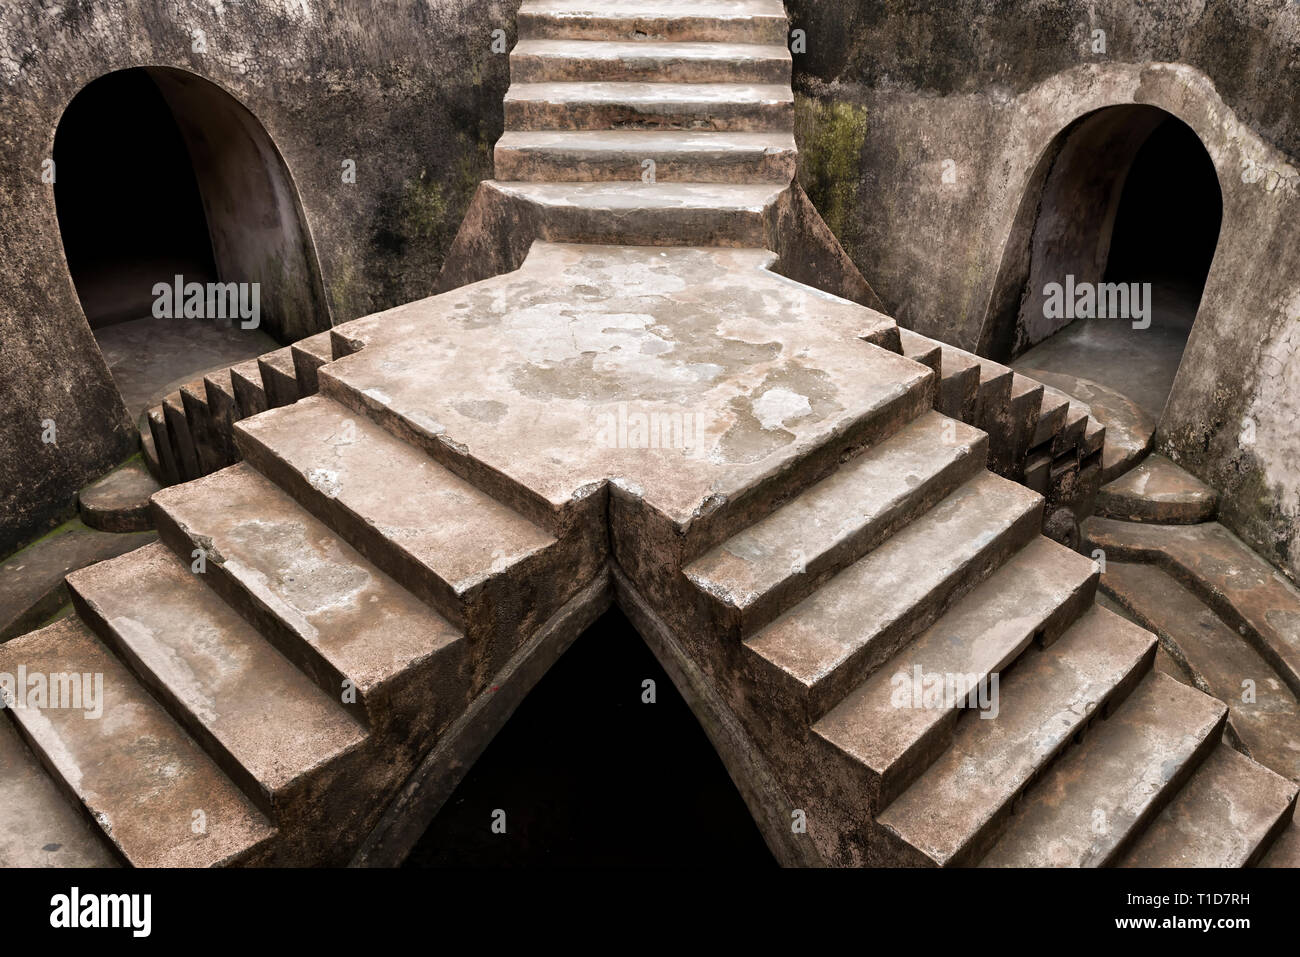 Sumur Gumuling le scale e le catacombe, parte di Taman Sari complesso in Yogyakarta Foto Stock